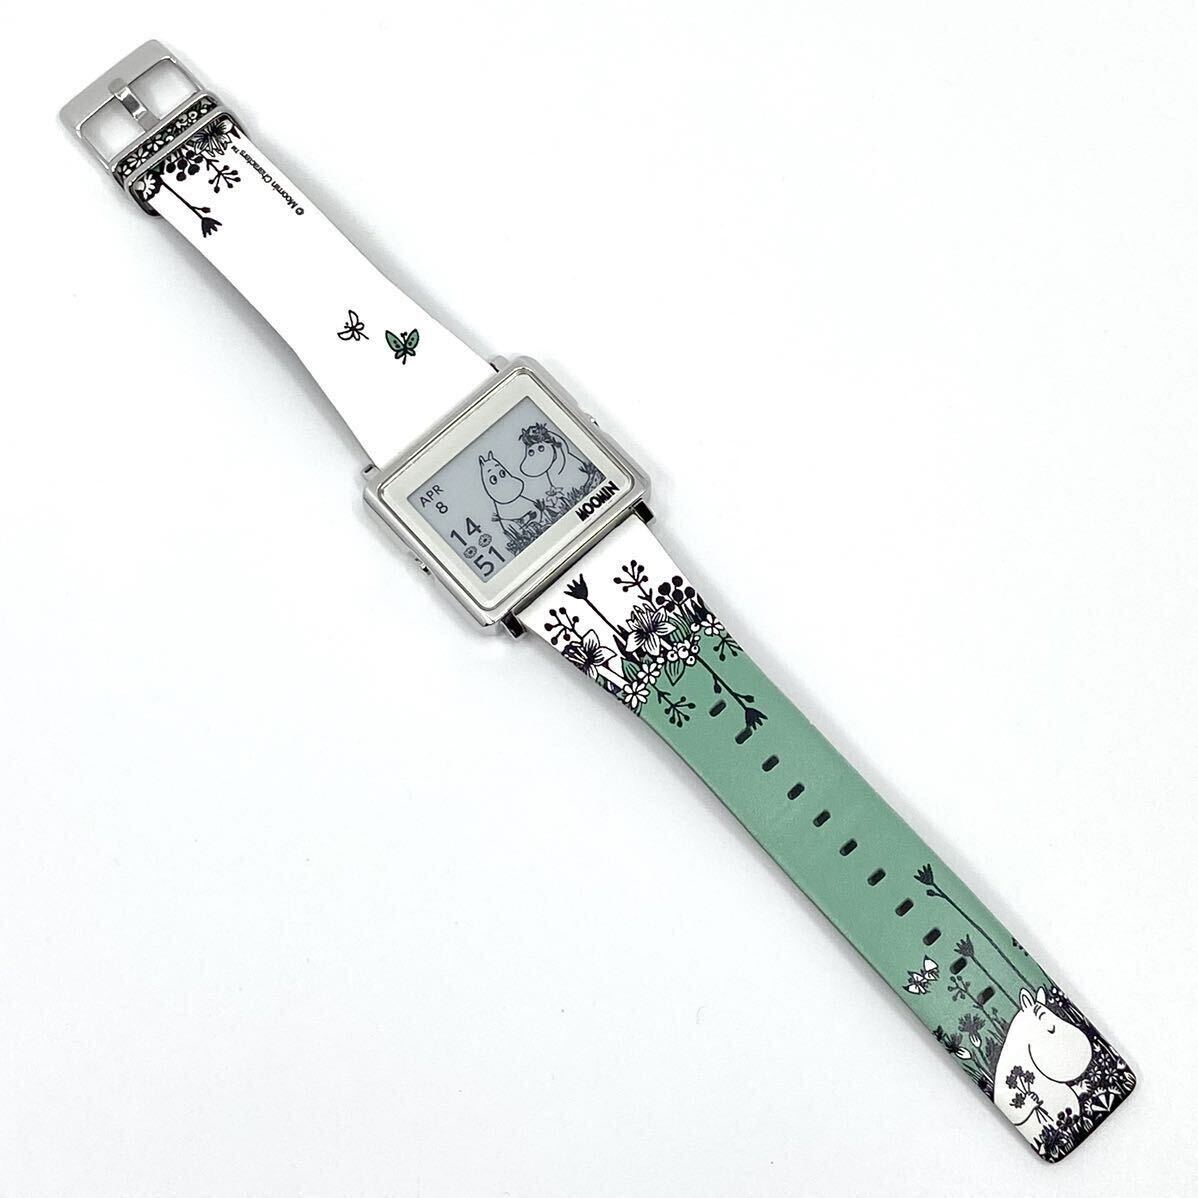  rare MOOMIN wristwatch smart key .n bus Moomin to roll digital W1-MM10110 quartz quartz silver silver EPSON Epson Y724